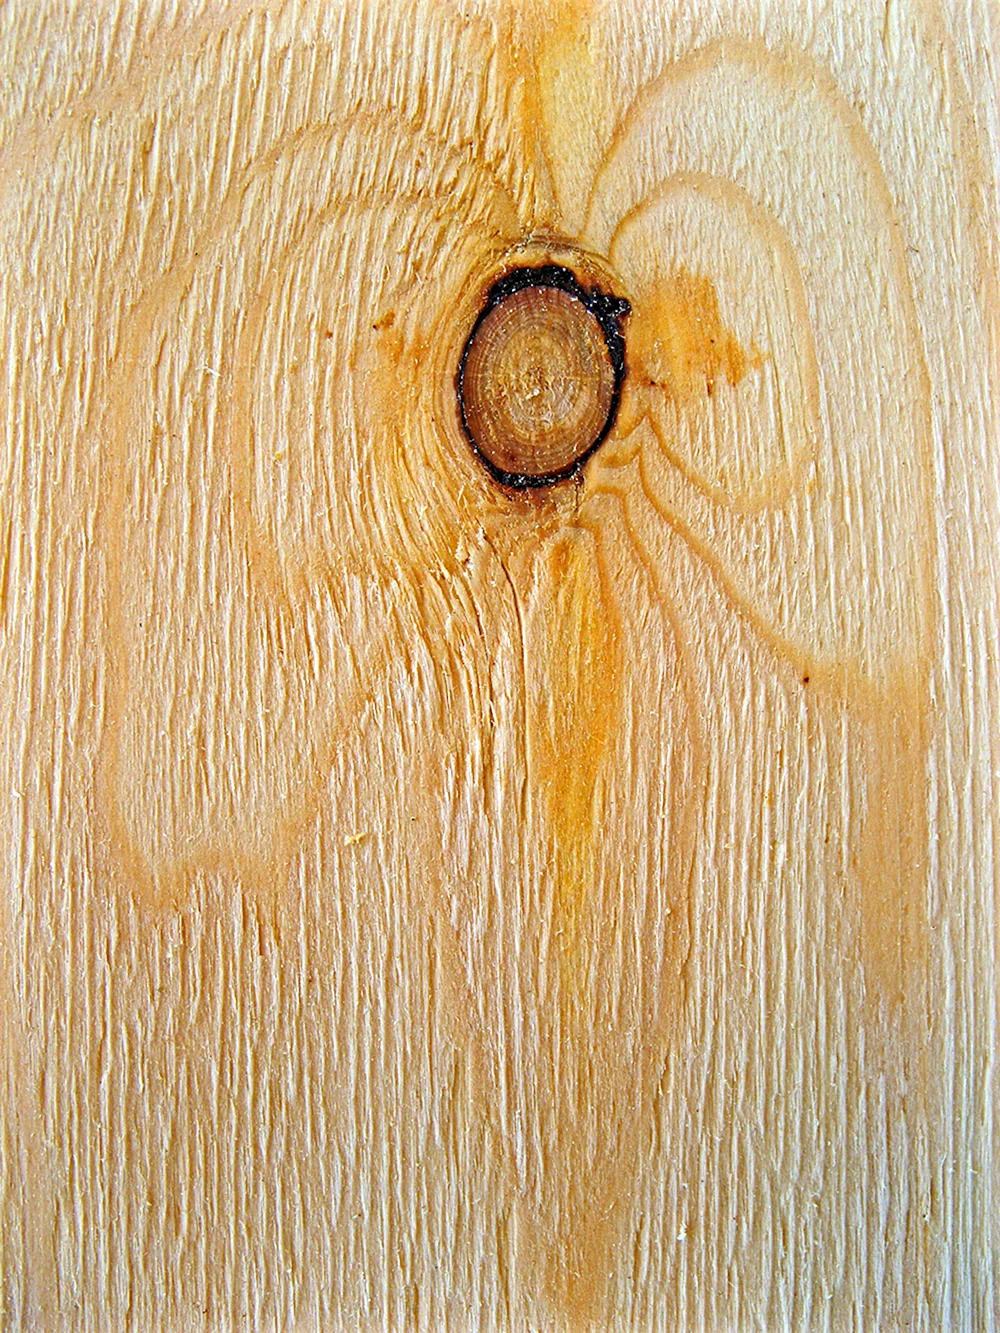 Глазки древесины